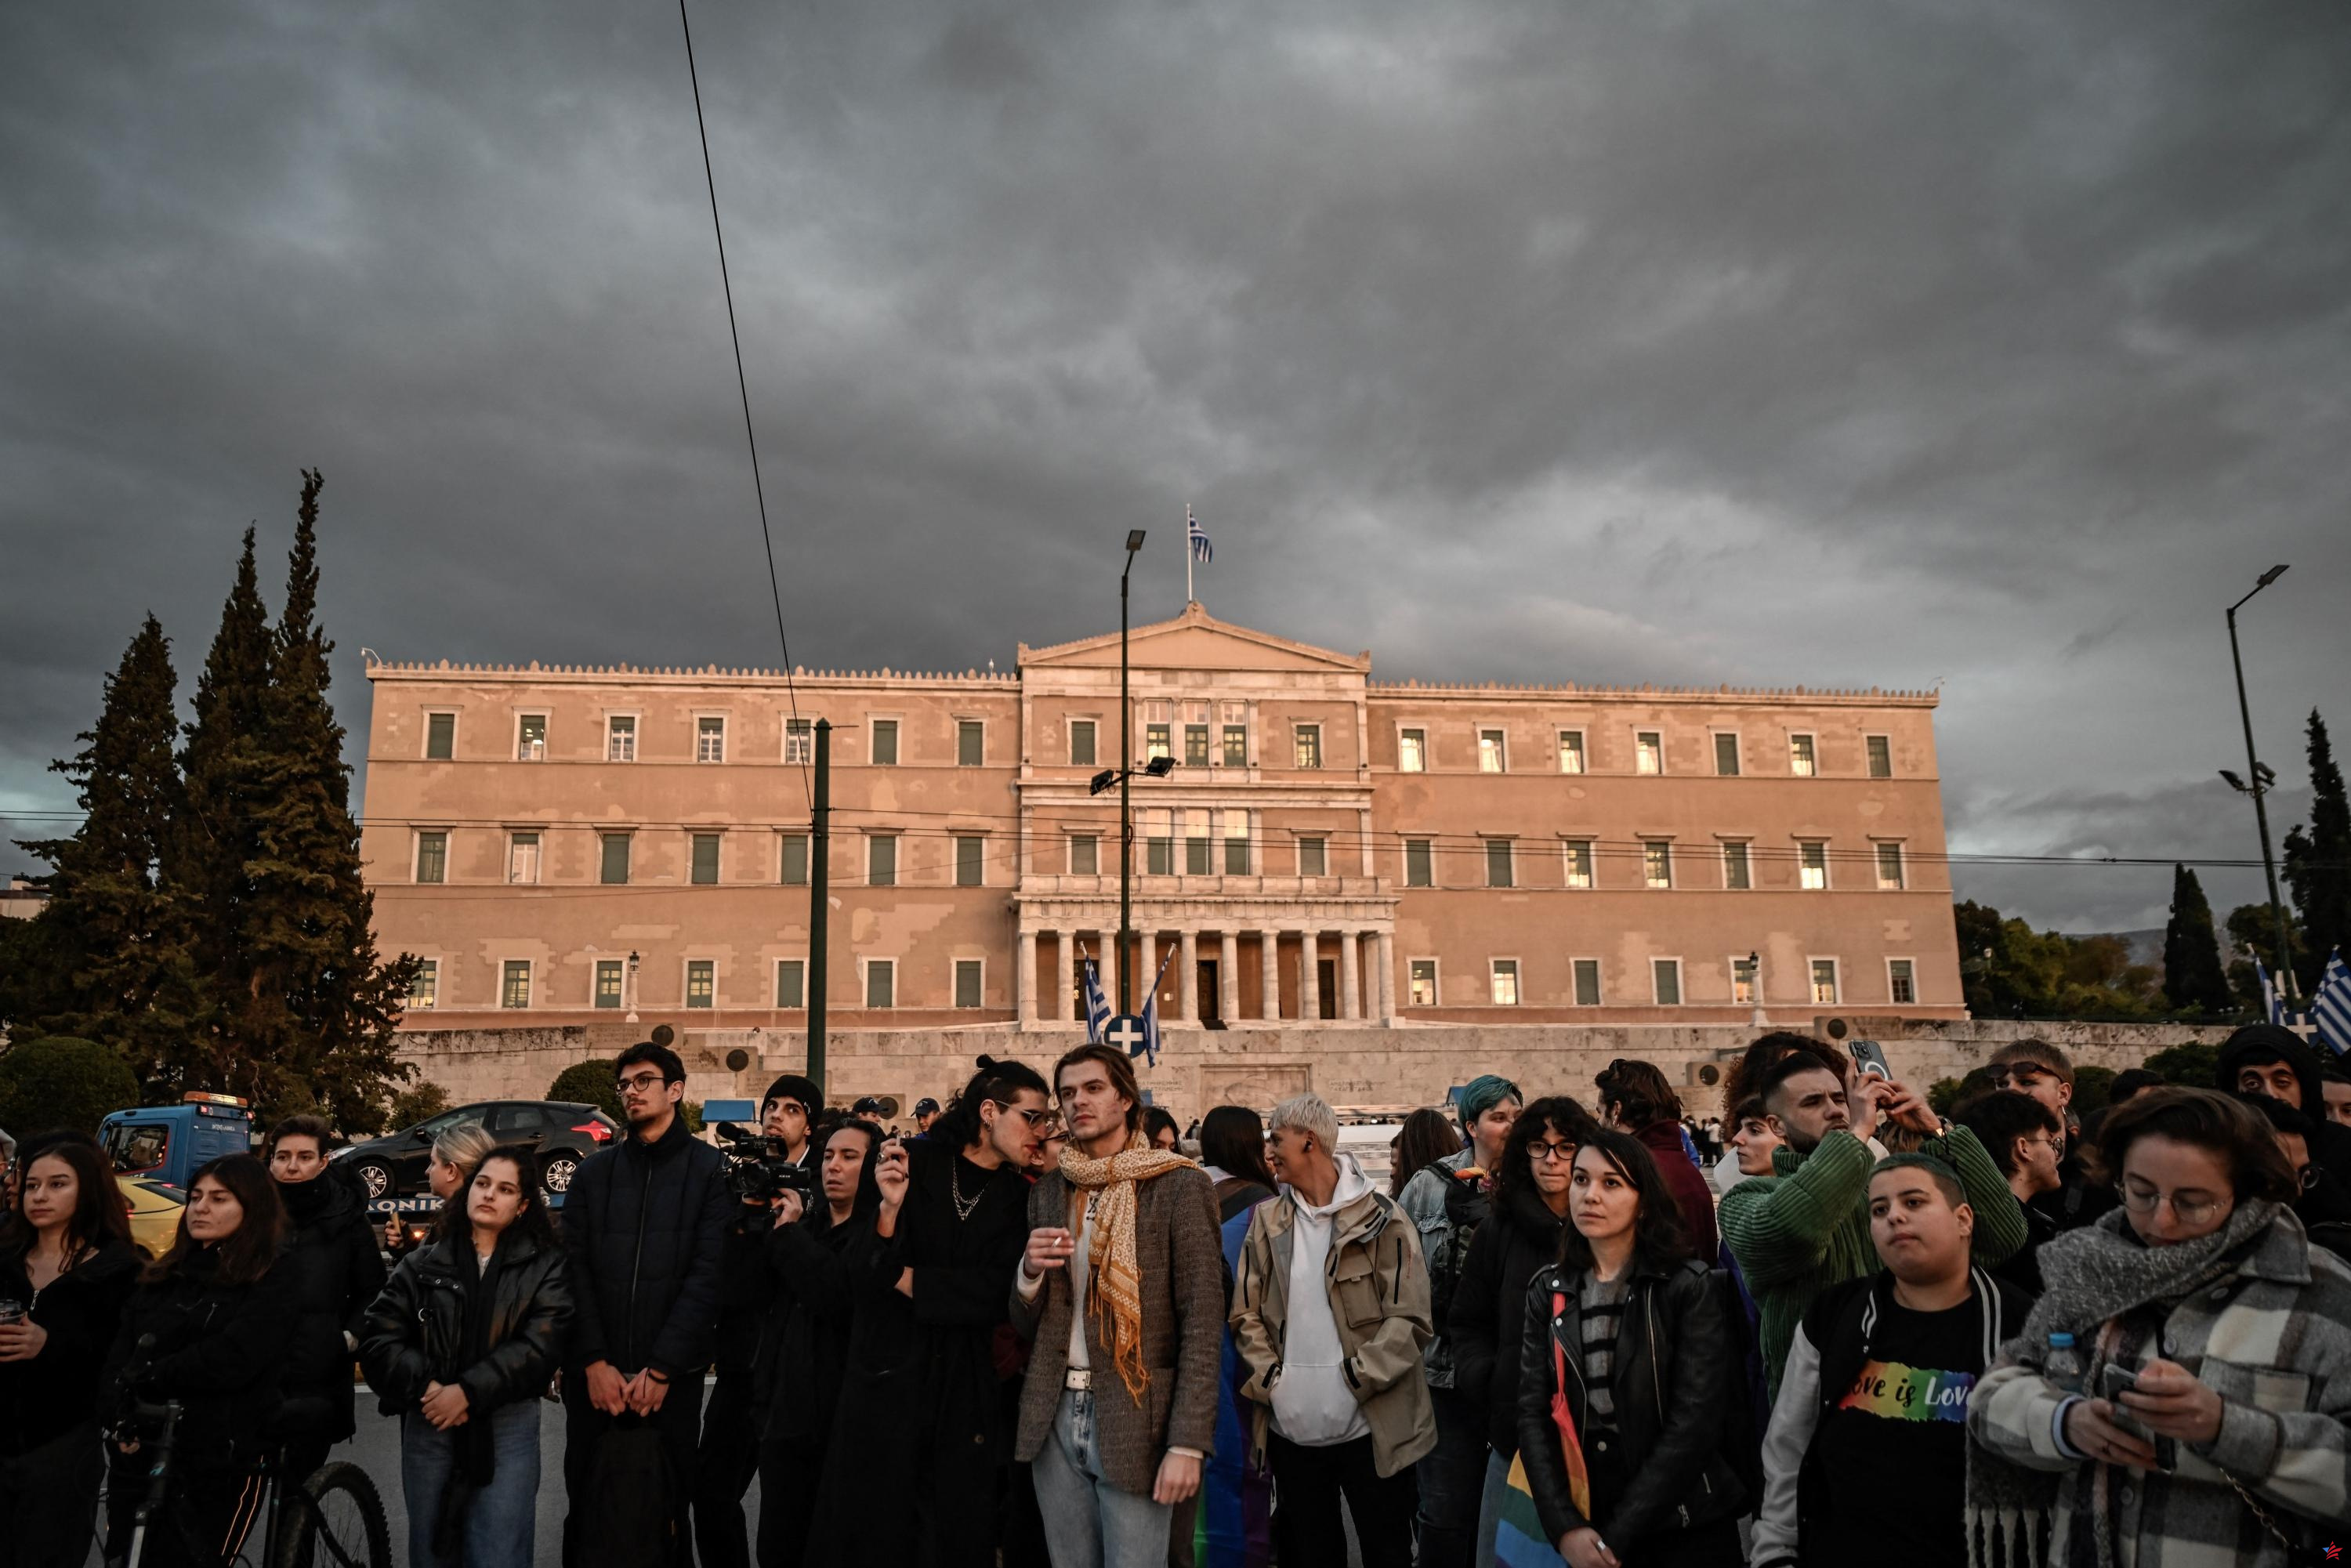 Grecia: el primer matrimonio entre personas del mismo sexo se celebró bajo protección policial